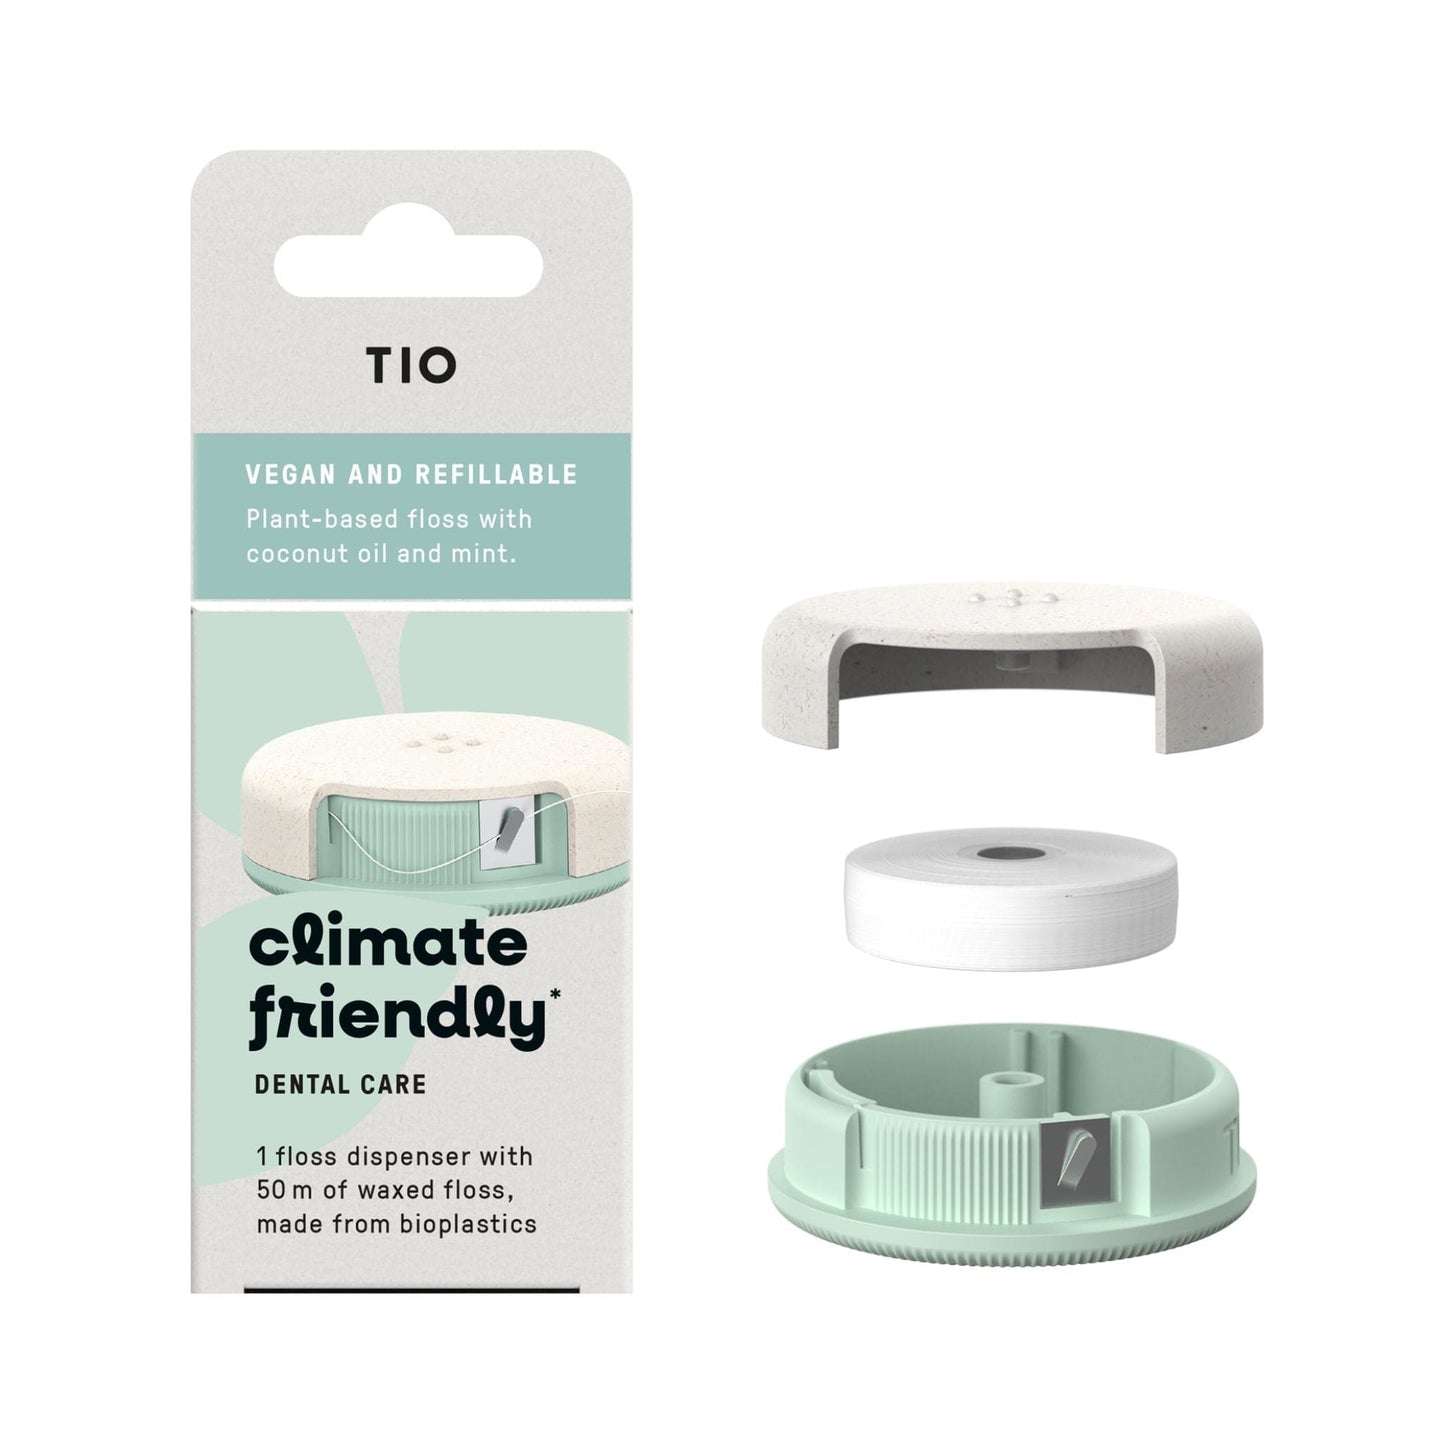 Tio Dental Floss Tio Vegan & Refillable Plant-Based Dental Floss 50m with Dispenser